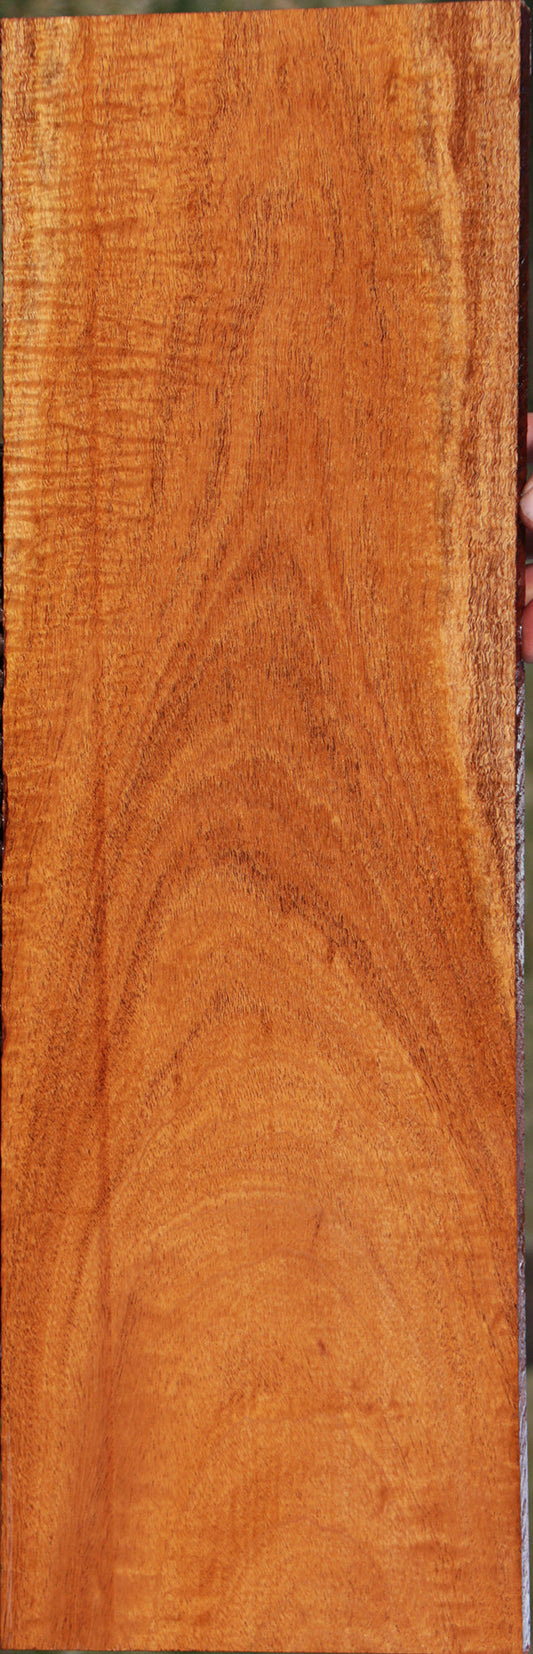 Honduras Mahogany Lumber